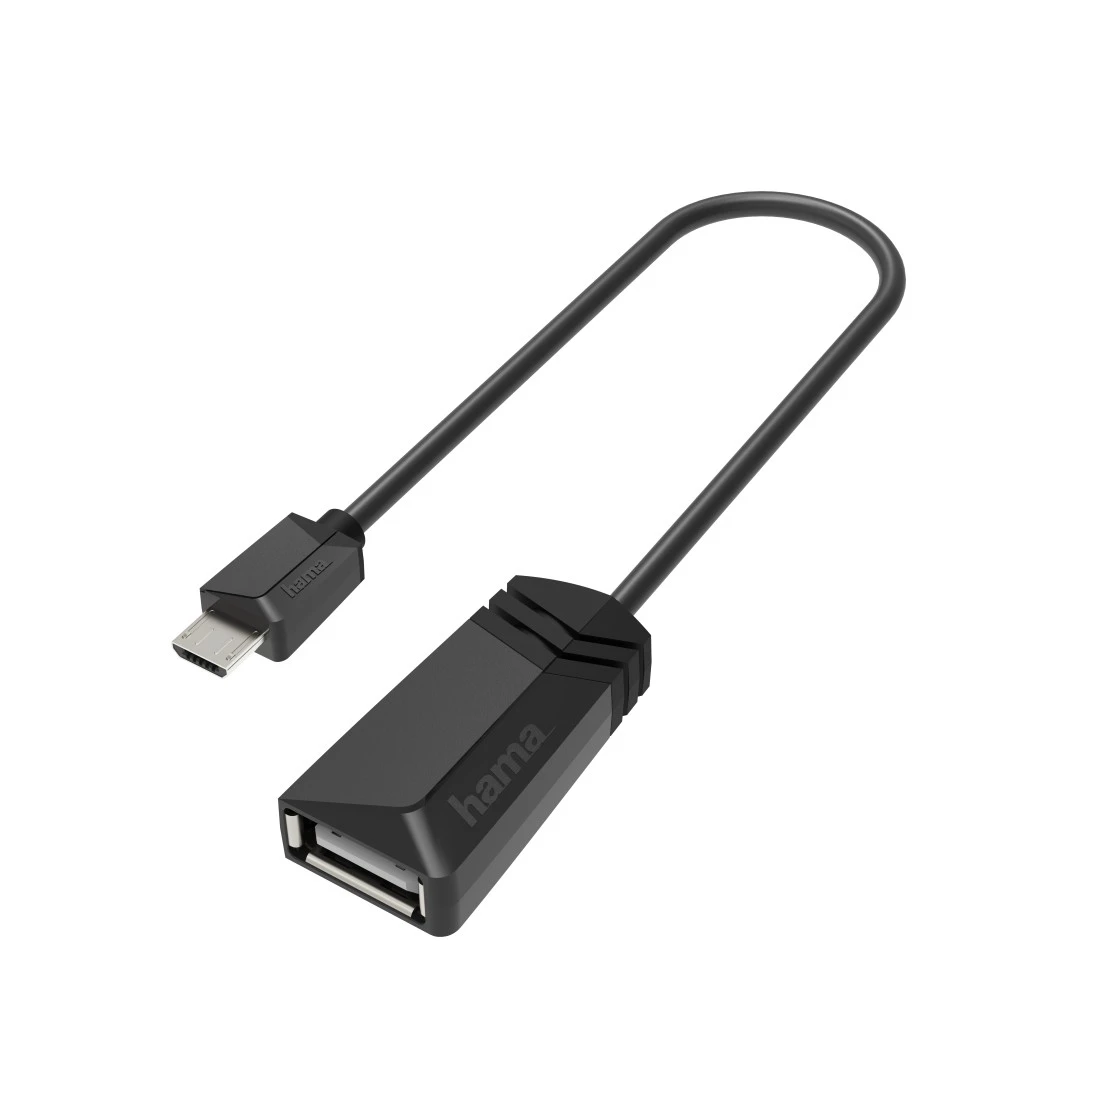 USB-OTG-Adapter, Micro-USB-Stecker - USB-Buchse, USB 2.0, 480 Mbit/s | Hama